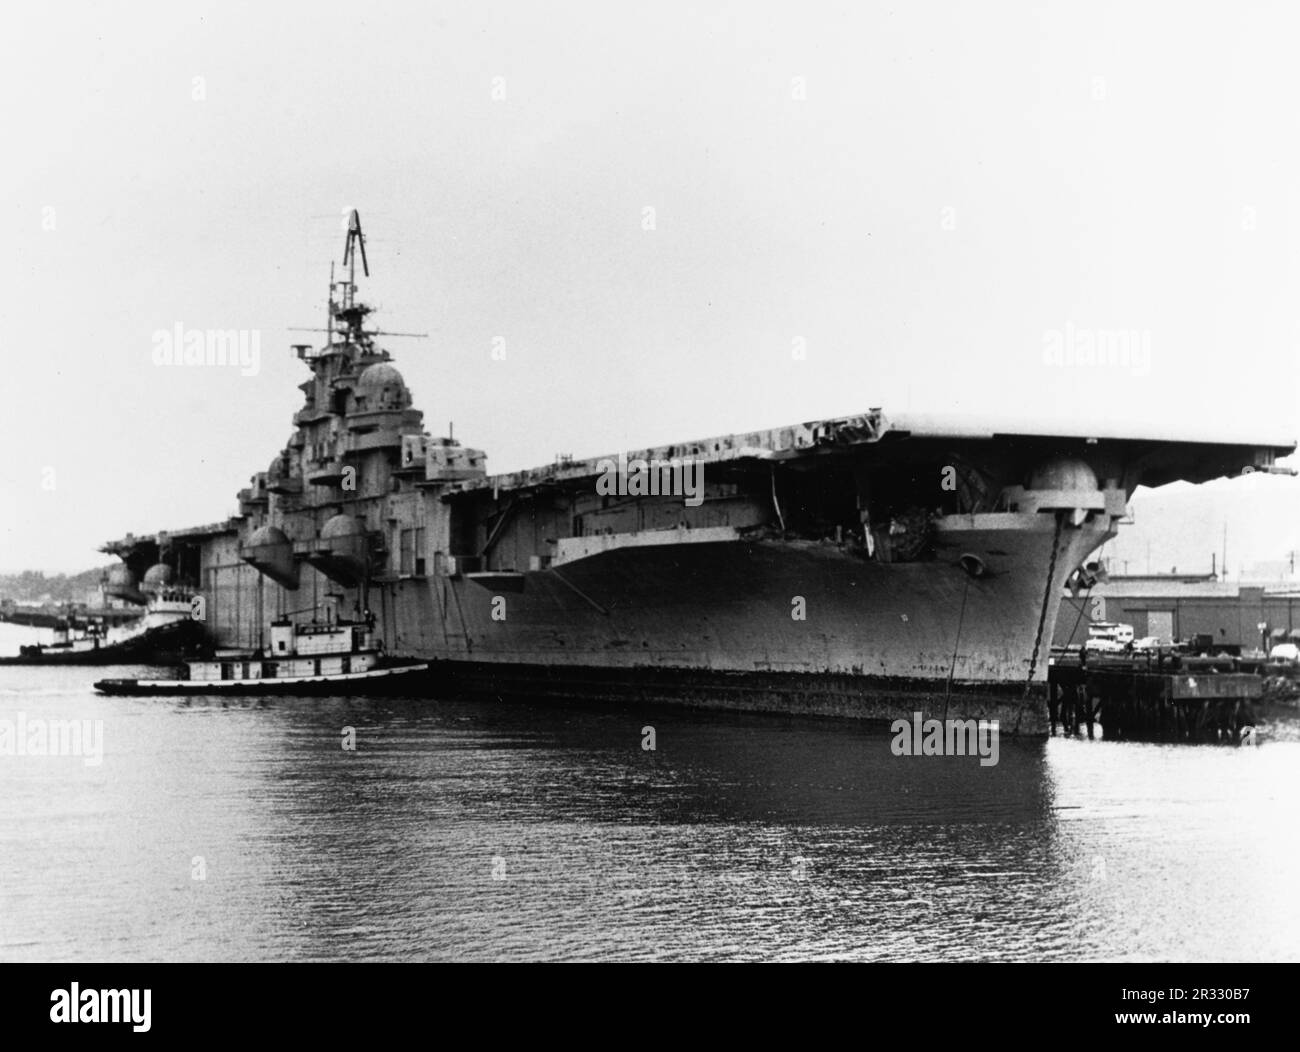 Il vettore US Essex Class USS Bunker Hill (CV-17) in attesa di essere demolito a Tacoma nell'aprile 1973. La nave è stata gravemente danneggiata da due scioperi di kamikaze in un minuto il 11 maggio 1945 a Okinawa. colpisce catturati aerei completamente alimentati e armati sul ponte e ha iniziato incendi molto pericolosi. Anche se gravemente danneggiata, la nave non affondò e tornò negli Stati Uniti per la riparazione. La nave è stata smantellata nel 1966 e demolita nel 1973. Foto Stock